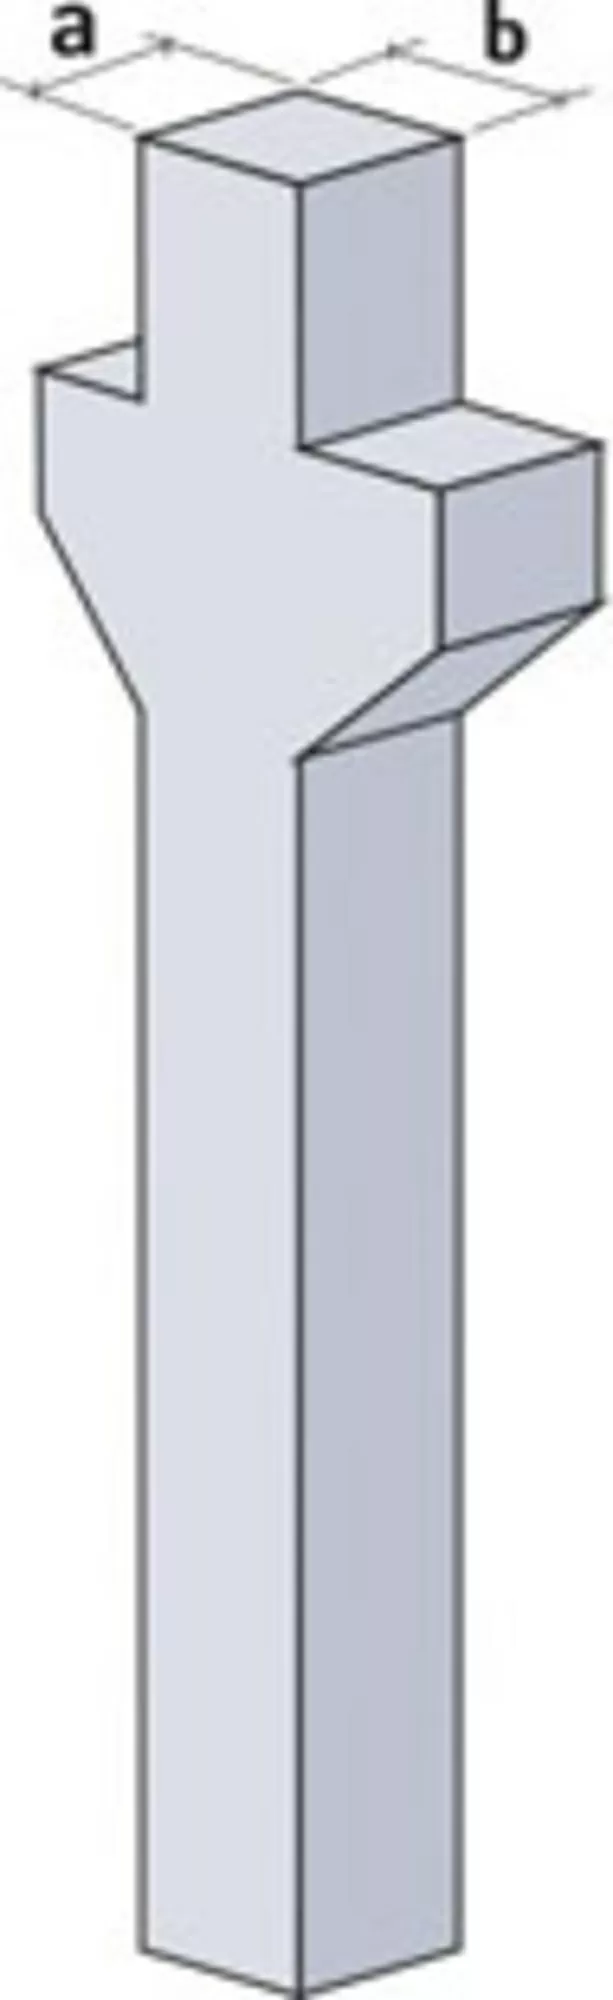 Бетон Железобетонные изделия плиты сваи колонны фундаментные стаканы  3